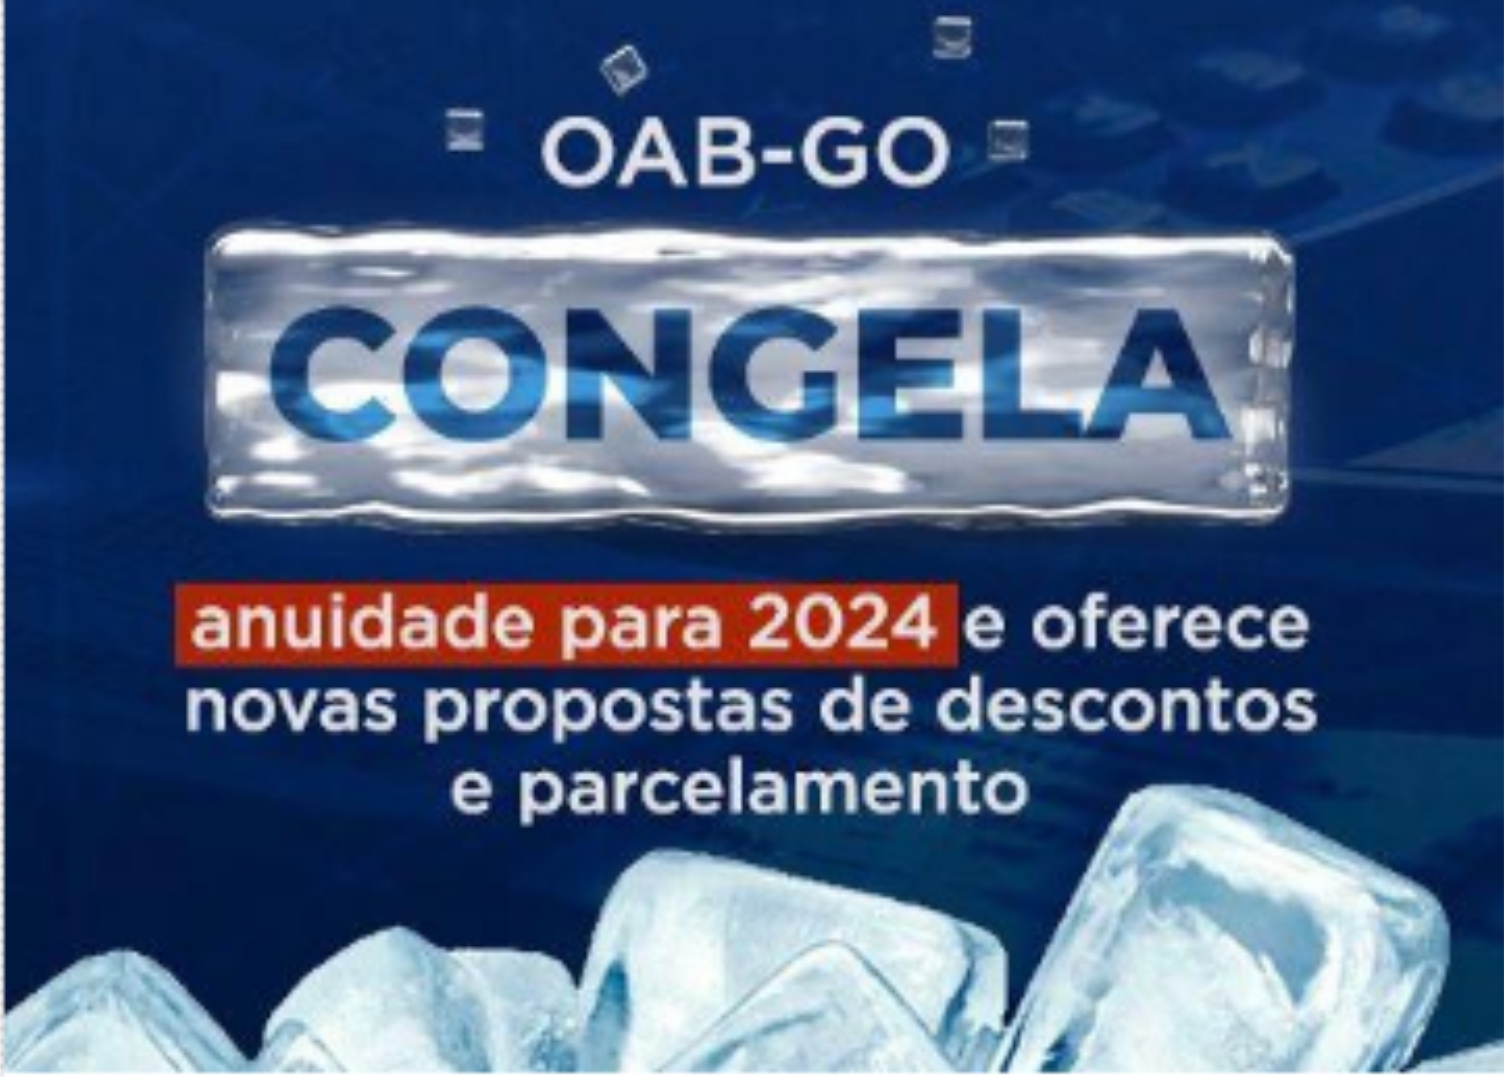 SEM REAJUSTE: OAB-GO CONGELA ANUIDADE PARA 2024 E OFERECE NOVAS PROPOSTAS DE DESCONTOS E PARCELAMENTO